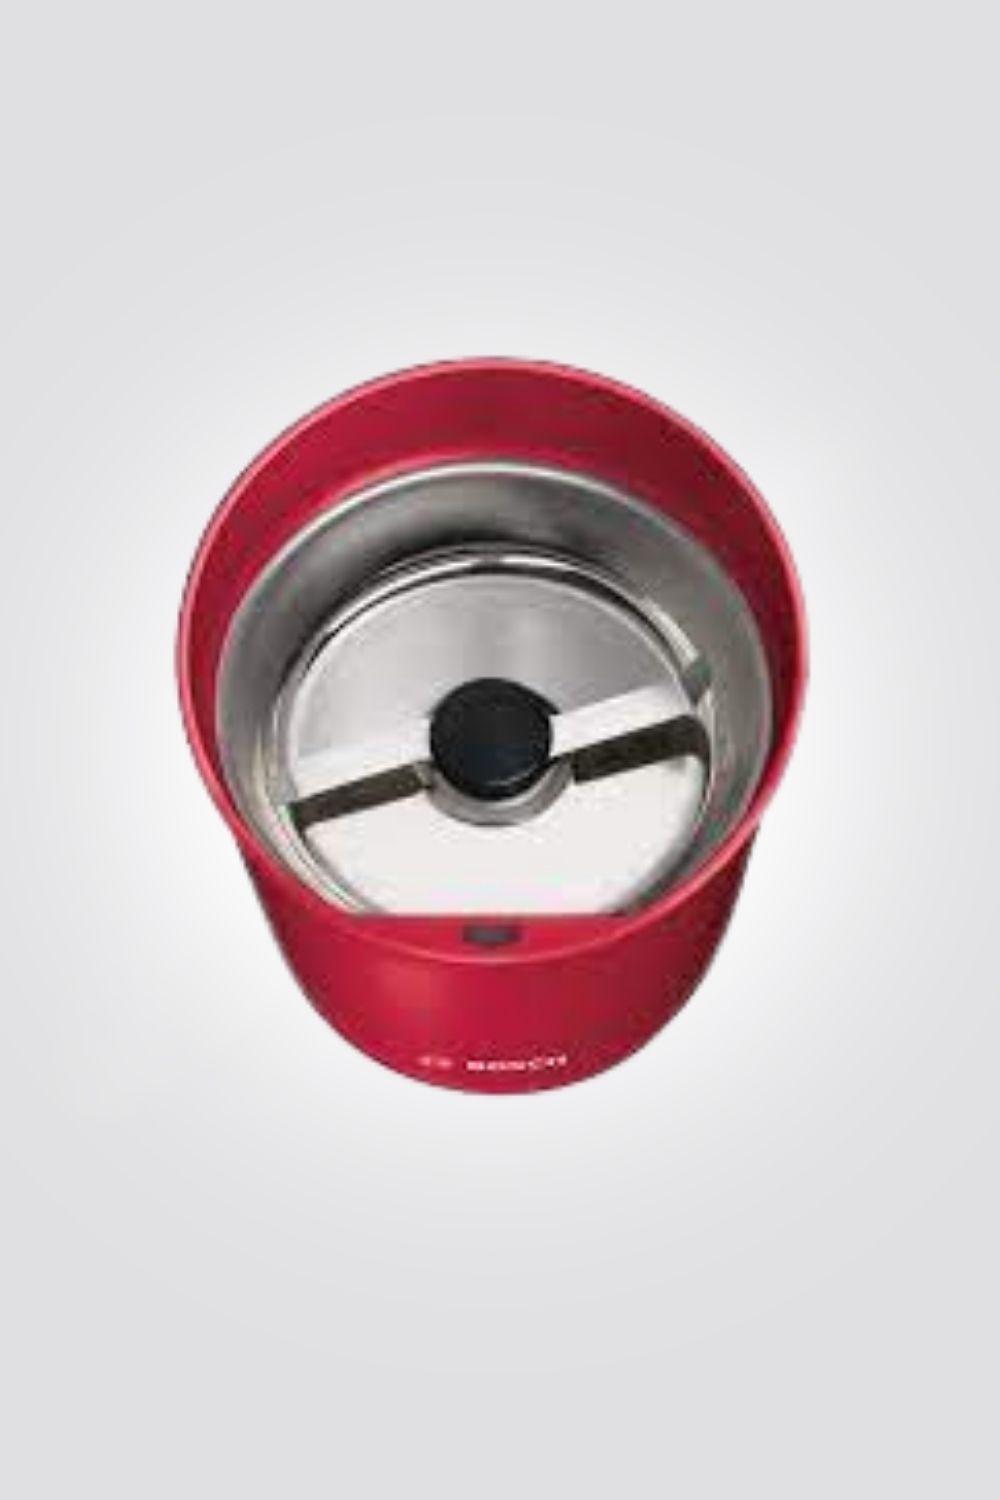 BOSCH - מטחנת קפה ביתית דגם TSM6A014R אדום - MASHBIR//365